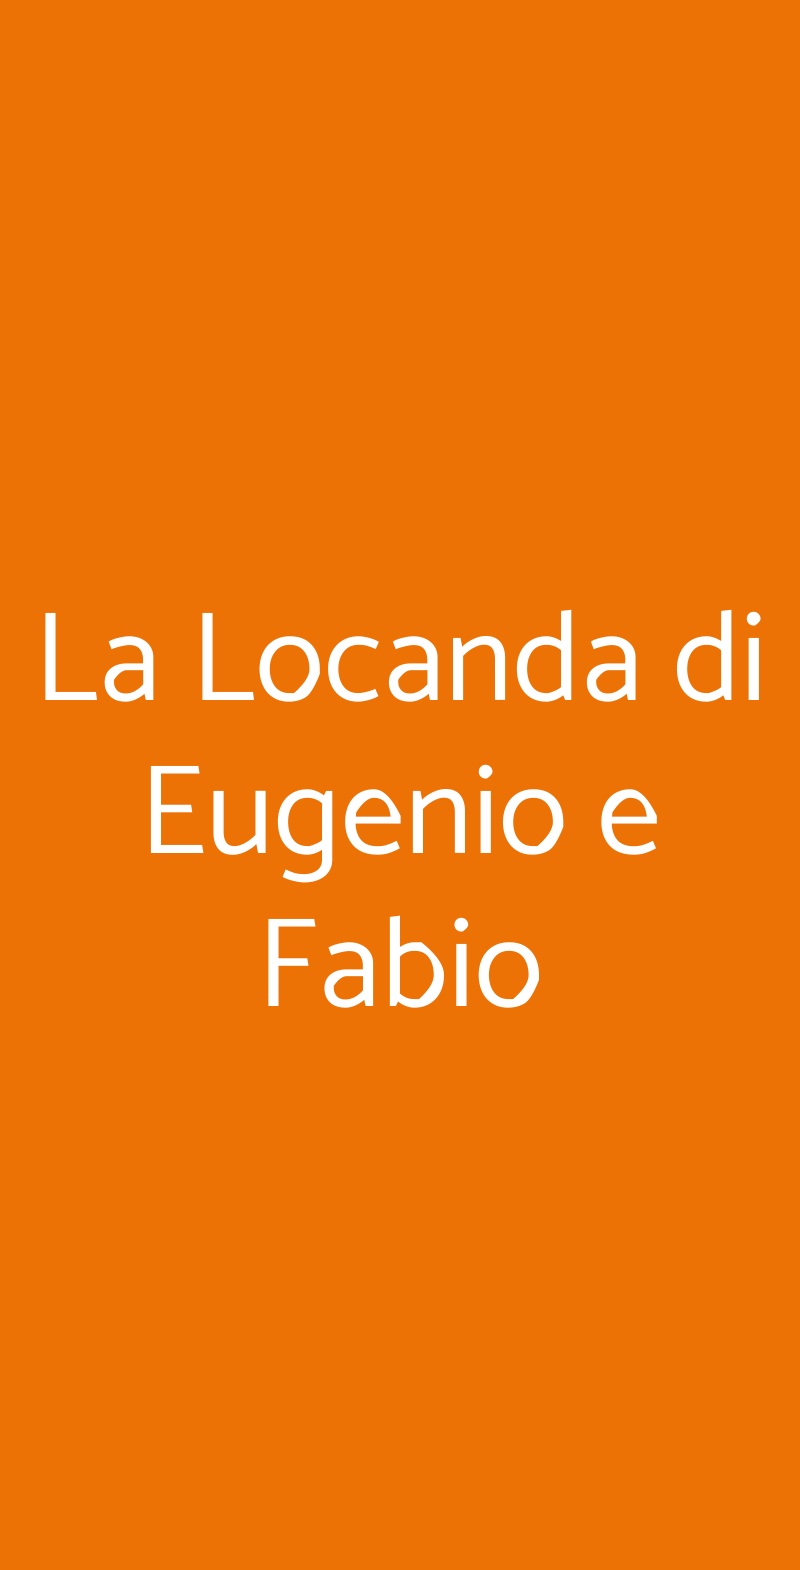 La Locanda di Eugenio e Fabio Roma menù 1 pagina